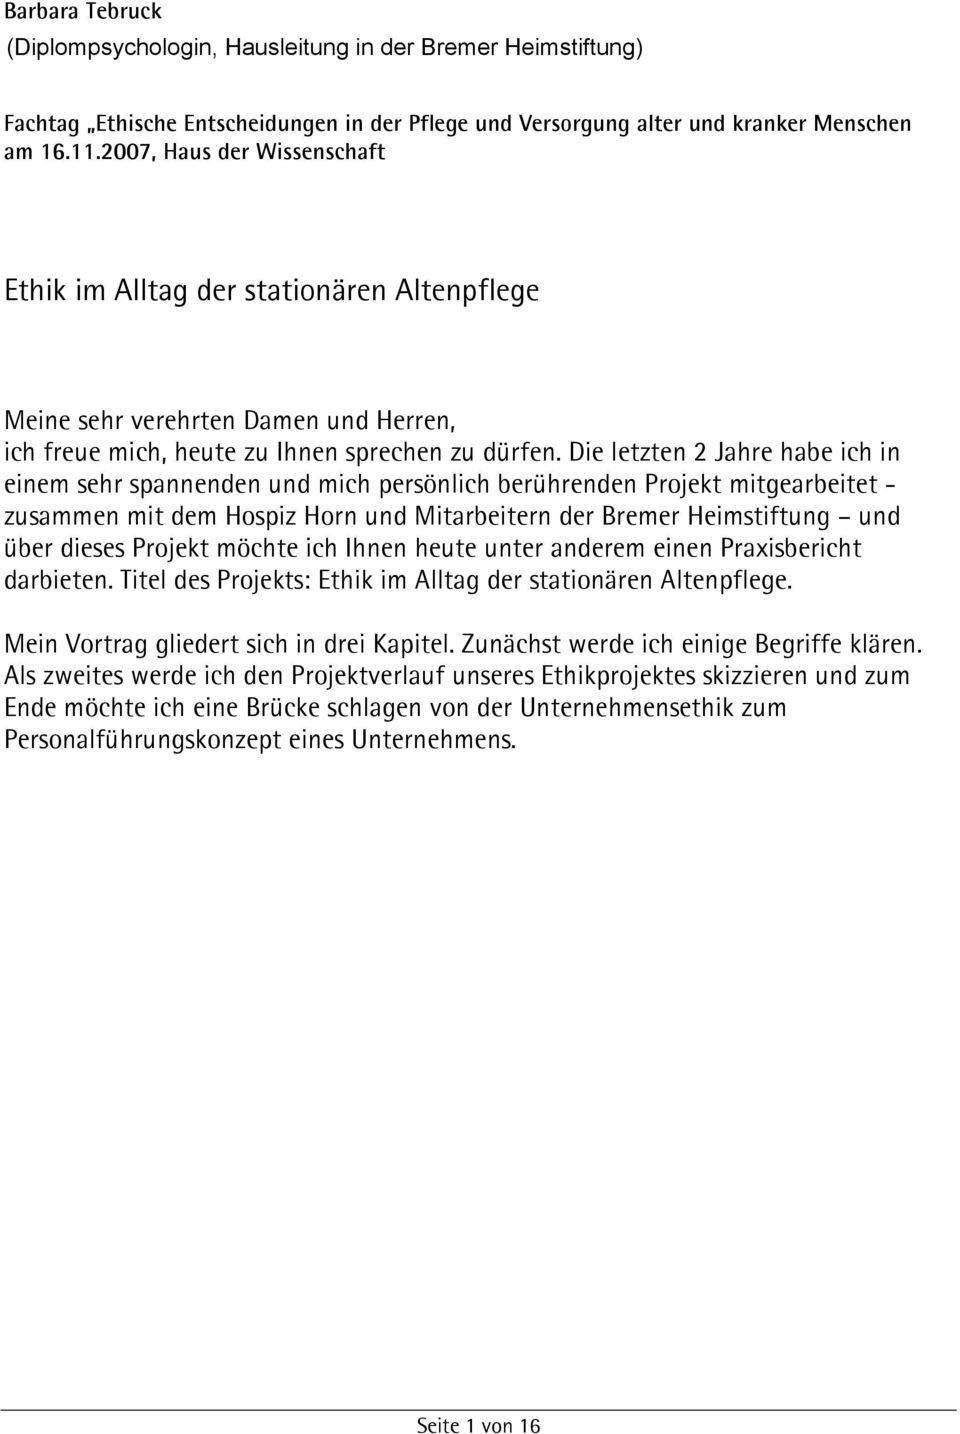 Ethik Im Alltag Der Stationaren Altenpflege Pdf Free Download